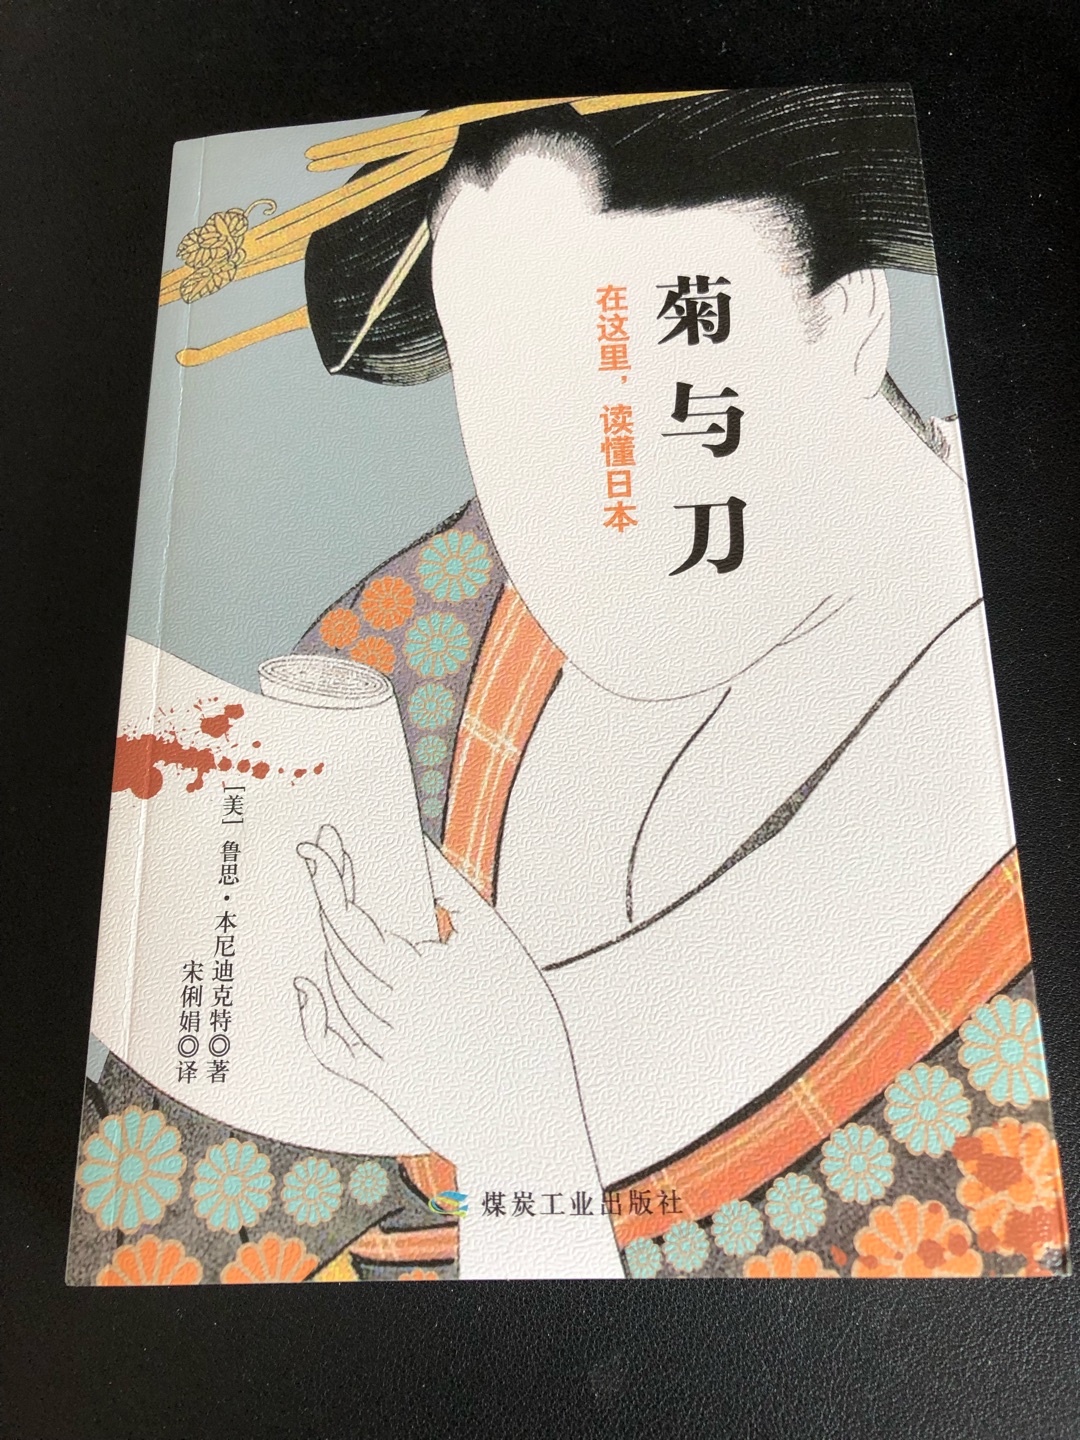 看这个封面就很有意思，一张脸部空白的日本女人像，读过此书才能将其眉眼五官看清，设计得不错。闲来读读，就当是了解日本文化习性的入门书吧